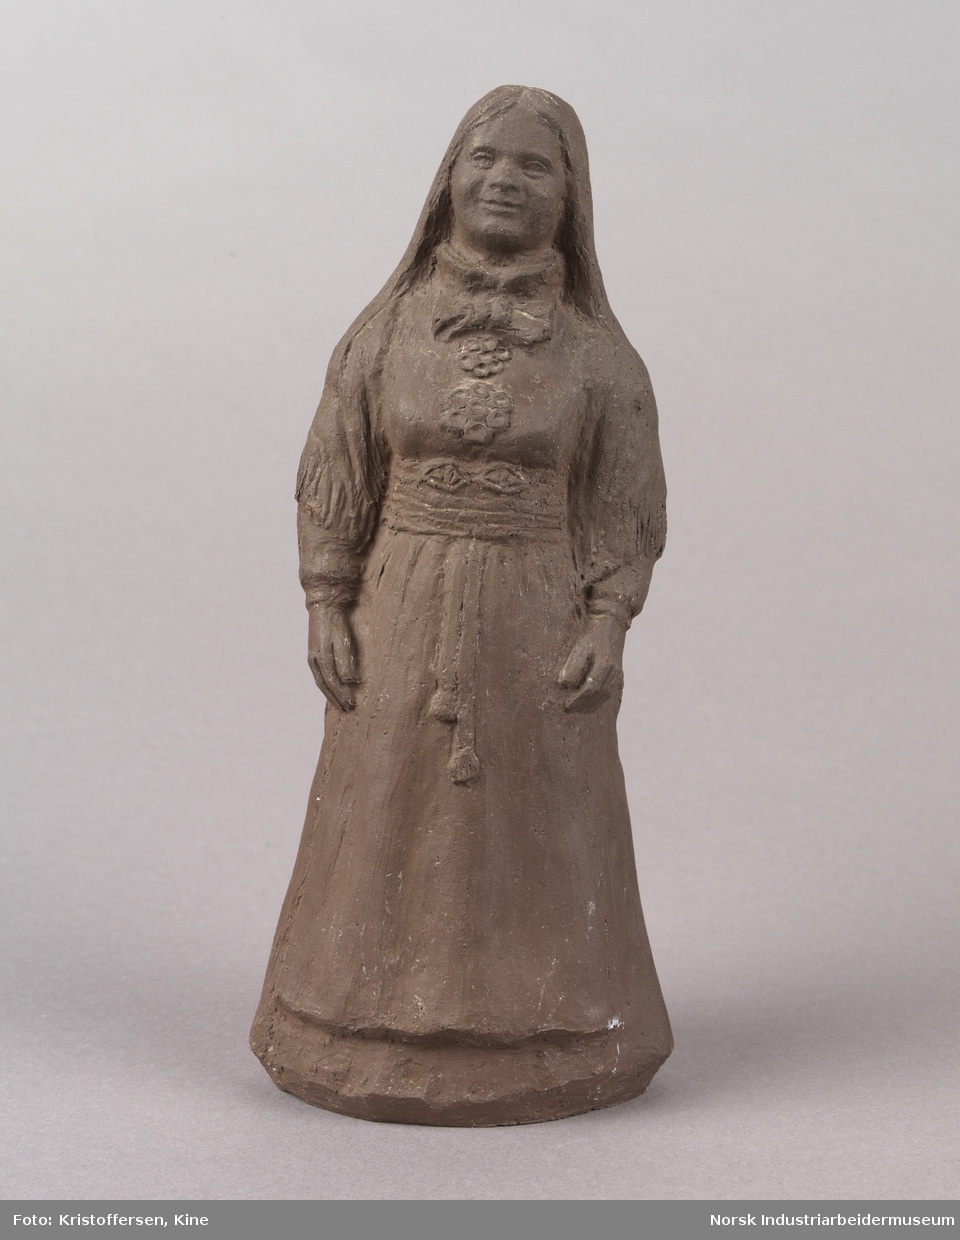 Figur av en kvinne med løst hår iført en bunad. Skulpturen er laget av leire. Bunaden ser ut som en beltestakk fra Telemark. Skulpturen er hul.